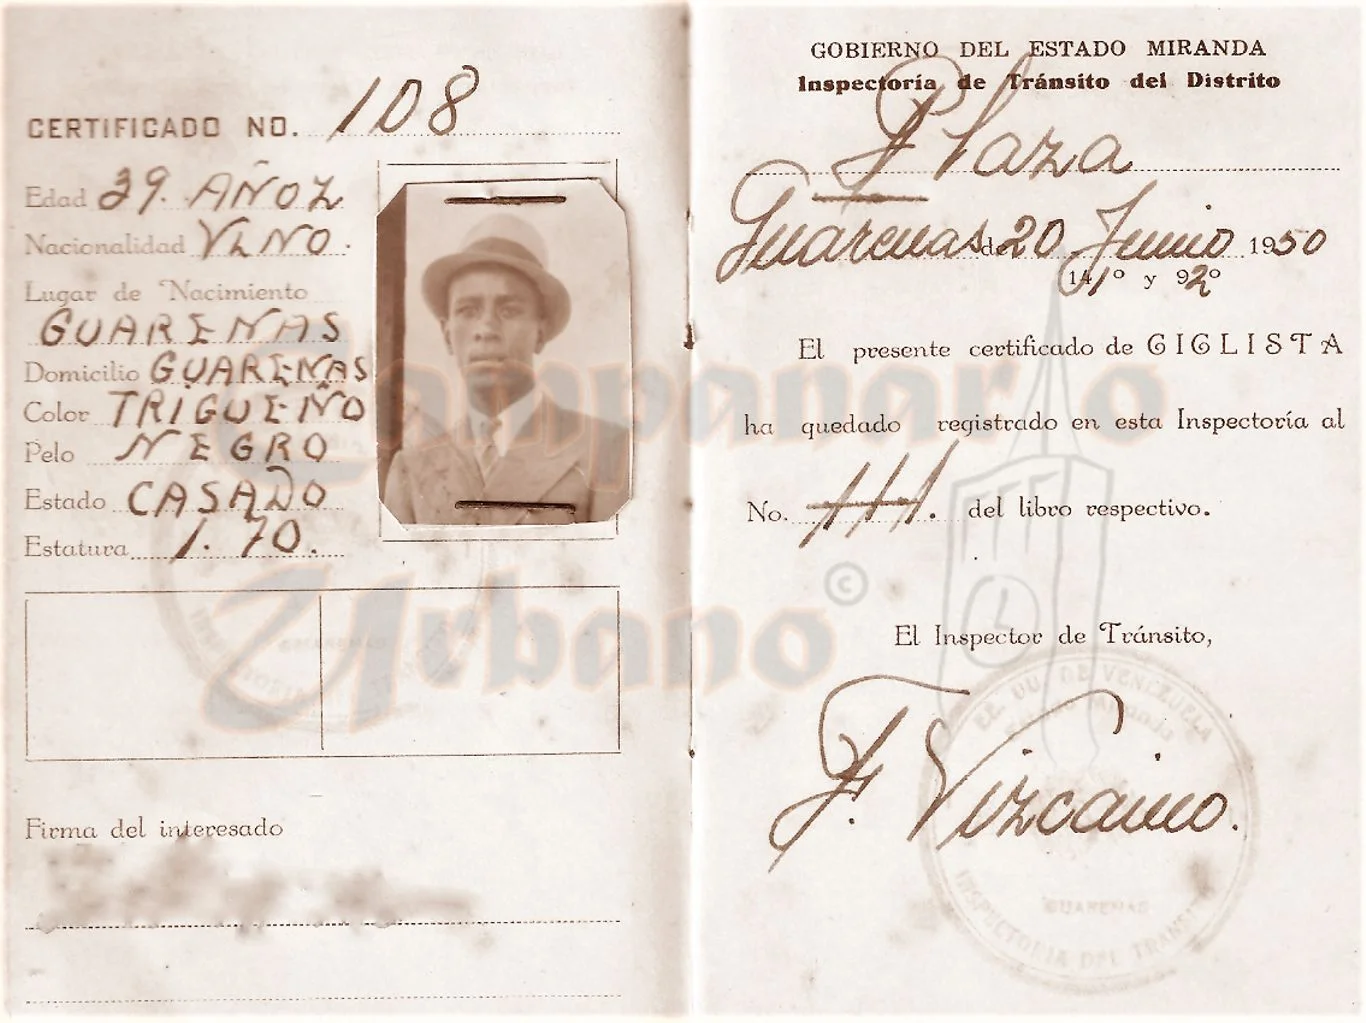 Credencial de ciclista para poder manejar la bicicleta en Guarenas, emitida por los Estados Unidos de Venezuela, Gobierno del Estado Miranda, Inspectoría de Tránsito del Distrito Plaza en Guarenas, 20 de junio de 1950